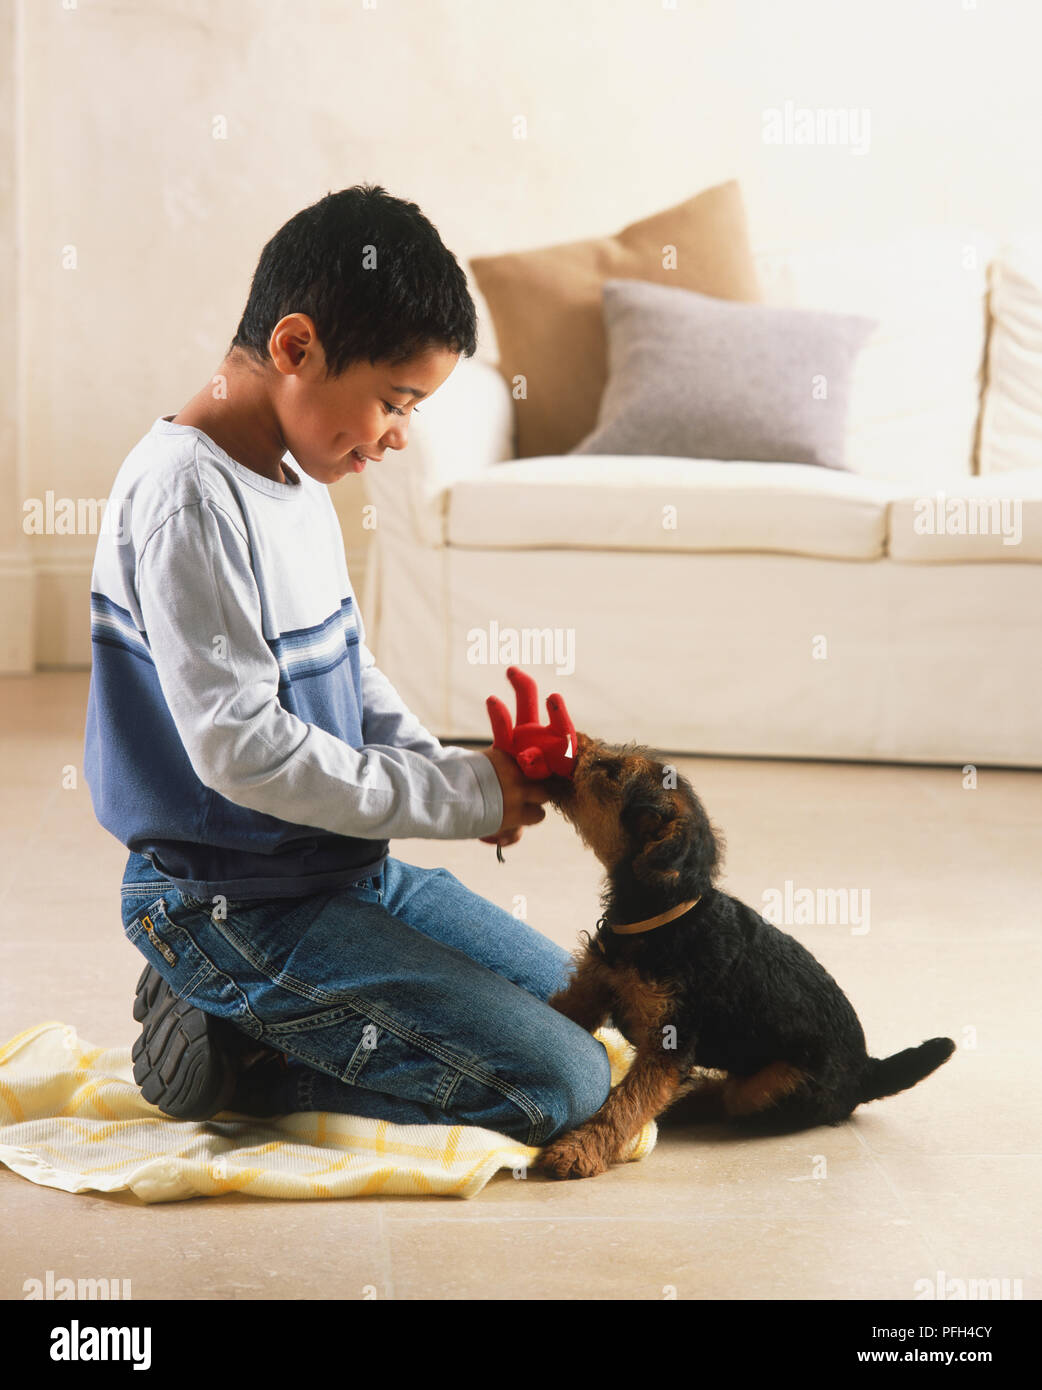 Cucciolo (canis familiaris) masticare un guanto offerti da un ragazzo inginocchiato accanto ad esso Foto Stock